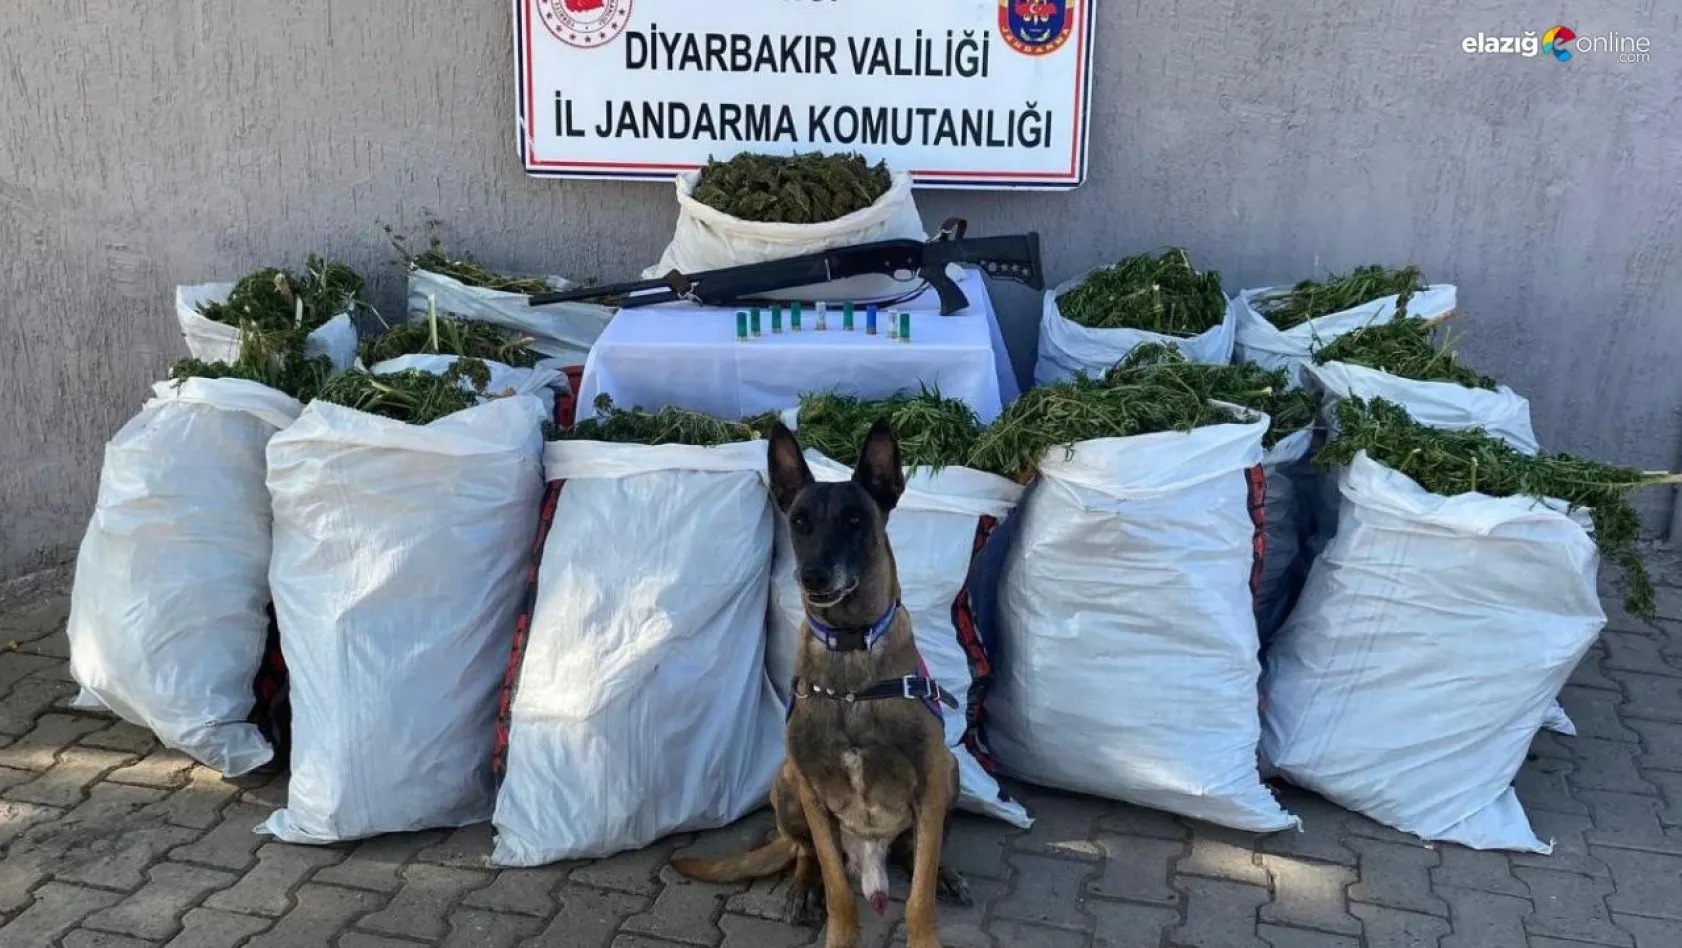 Diyarbakır'da bir adreste yapılan aramada 177 kilo esrar ele geçirildi